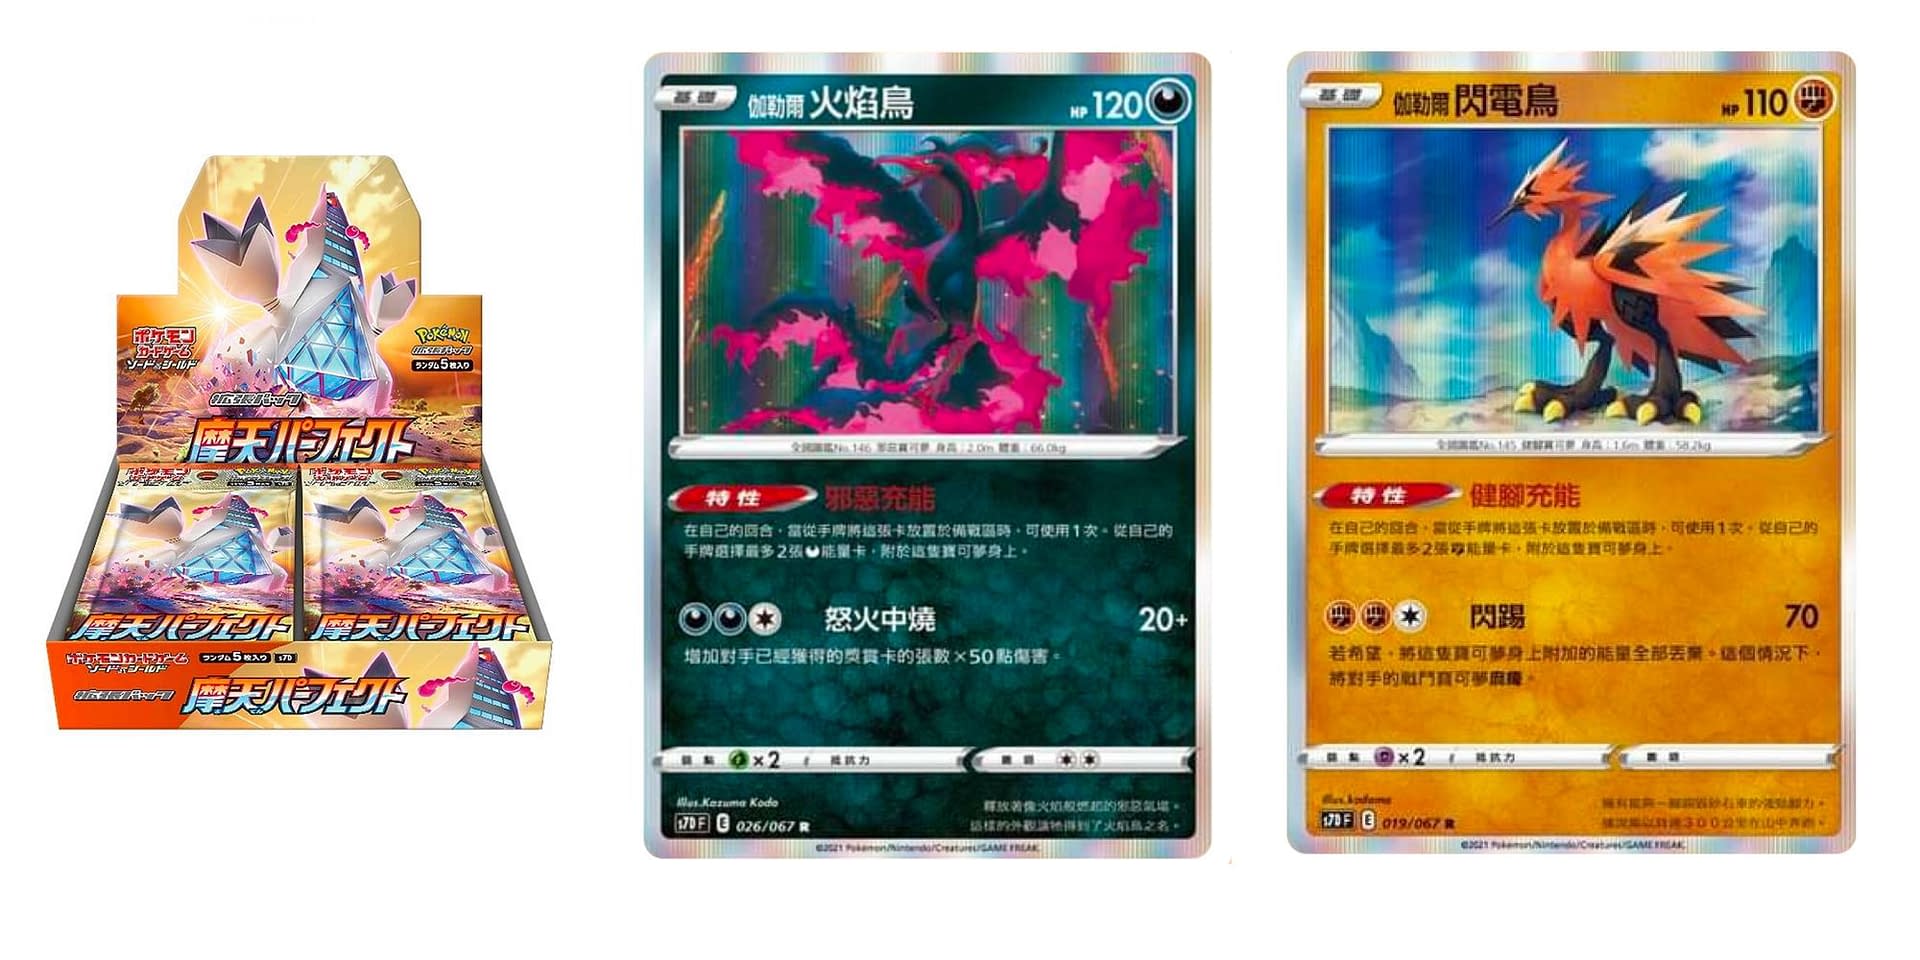 Galarian Moltres, Zapdos, Articuno - Holo Rare Pokemon Cards